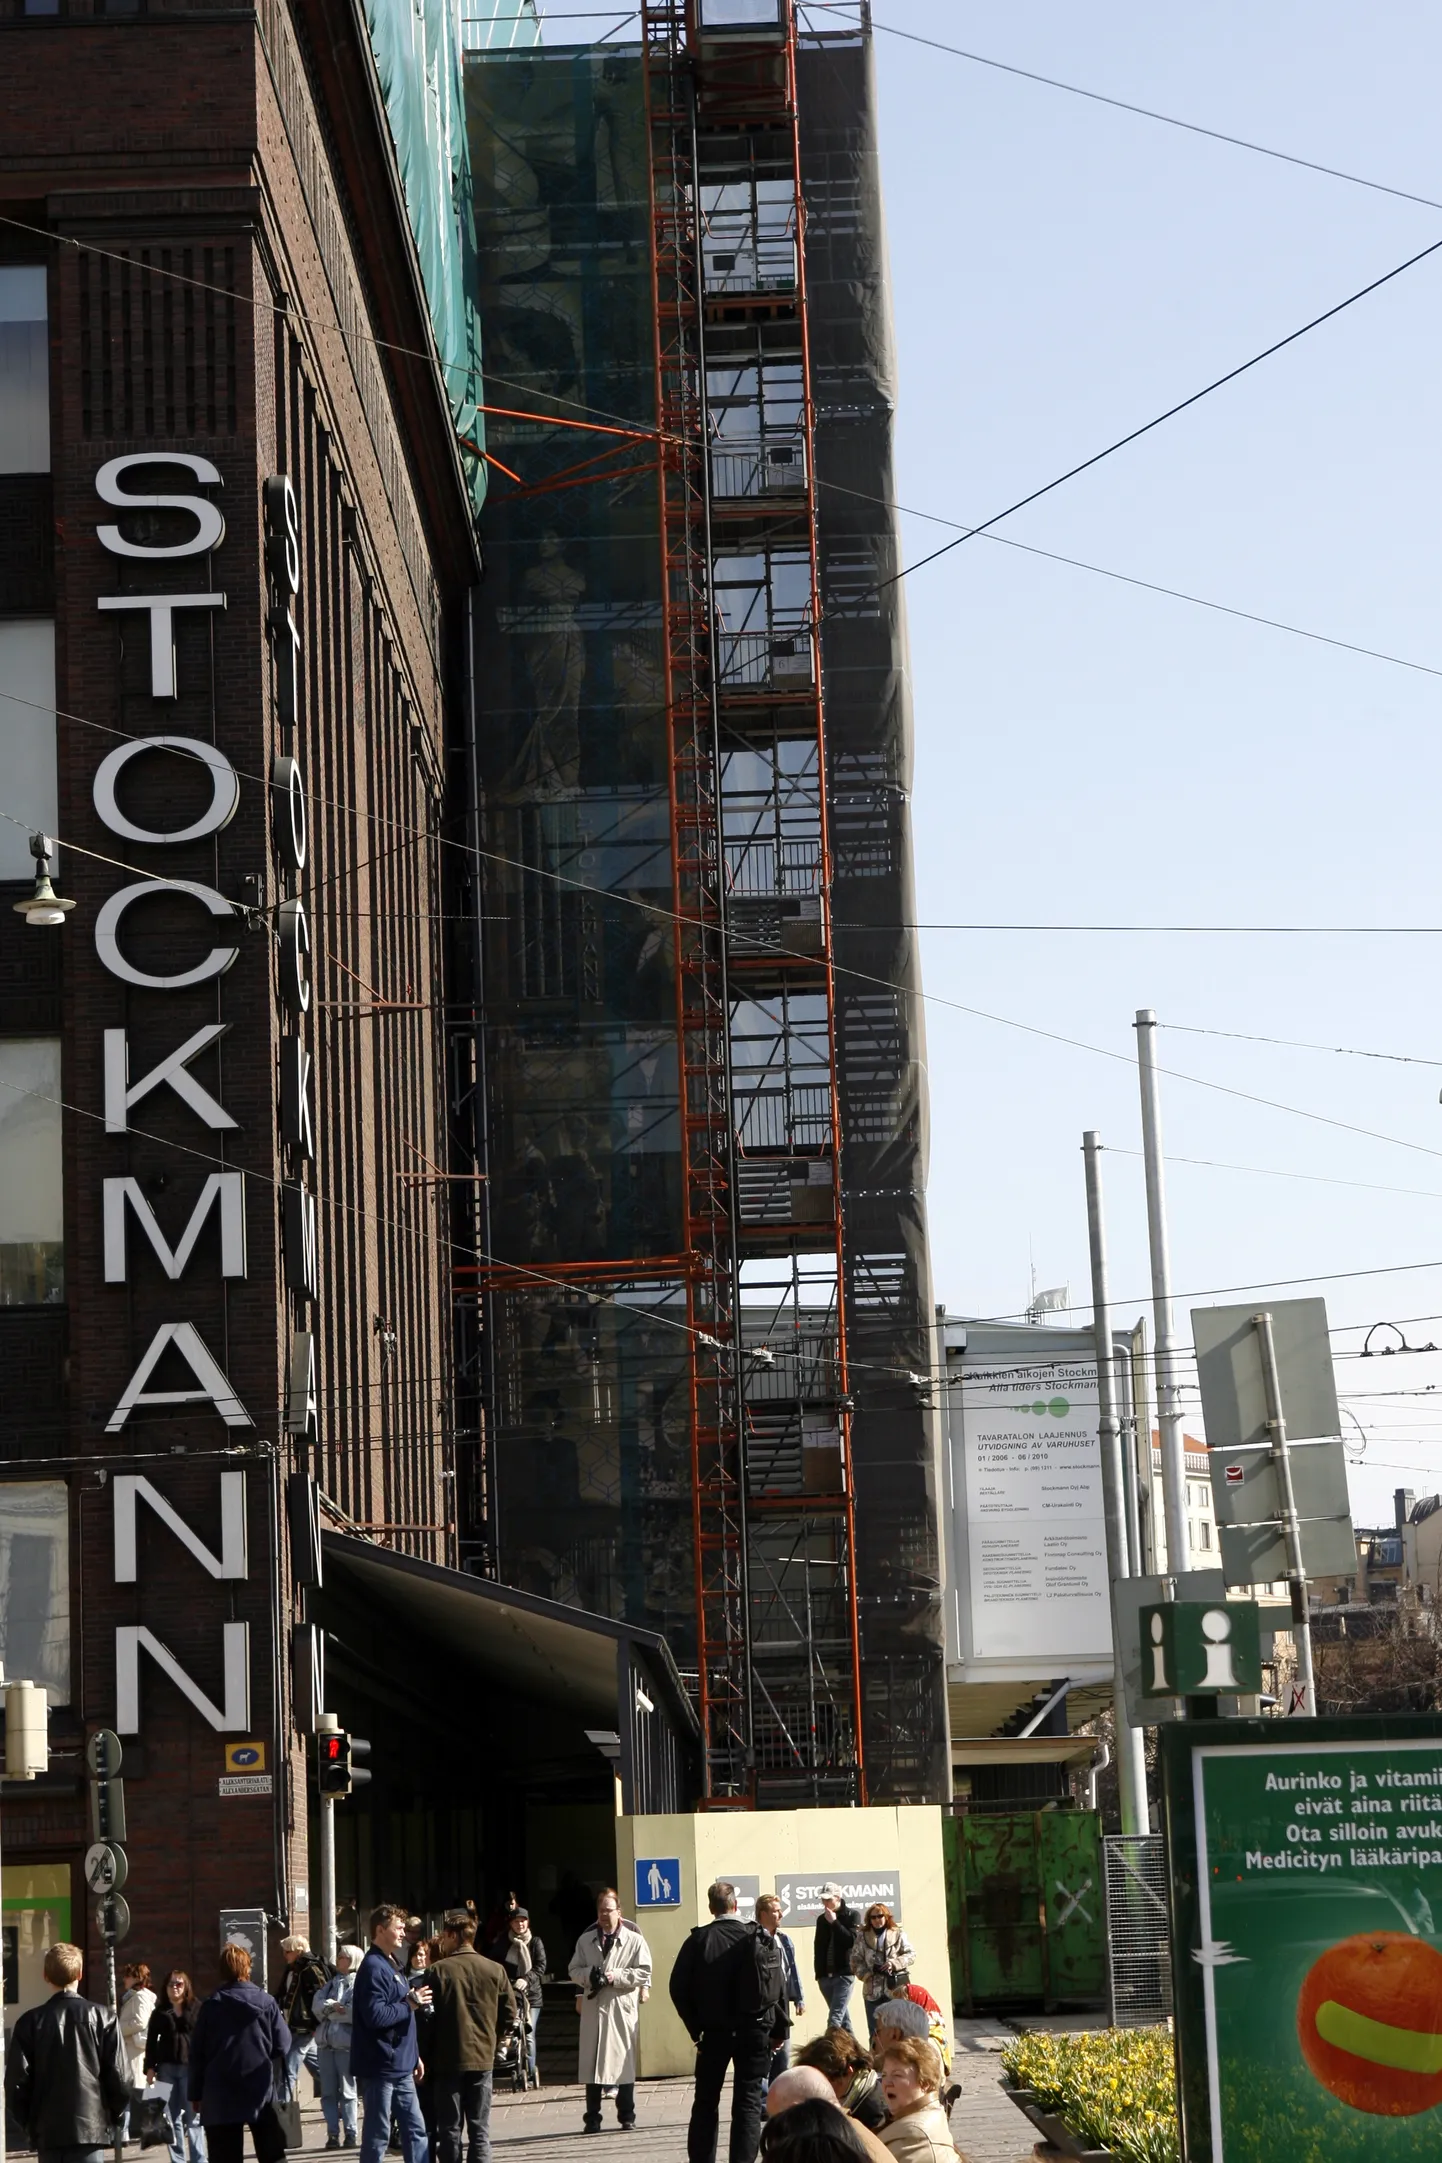 Soome majanduse käekäik avaldub kaudselt ka Lindex Groupi, varem tuntud ka Stockmanni grupi majandustulemustes, mis tõid tänavu esimeses kvartalis taas kopsaka kahjumi.